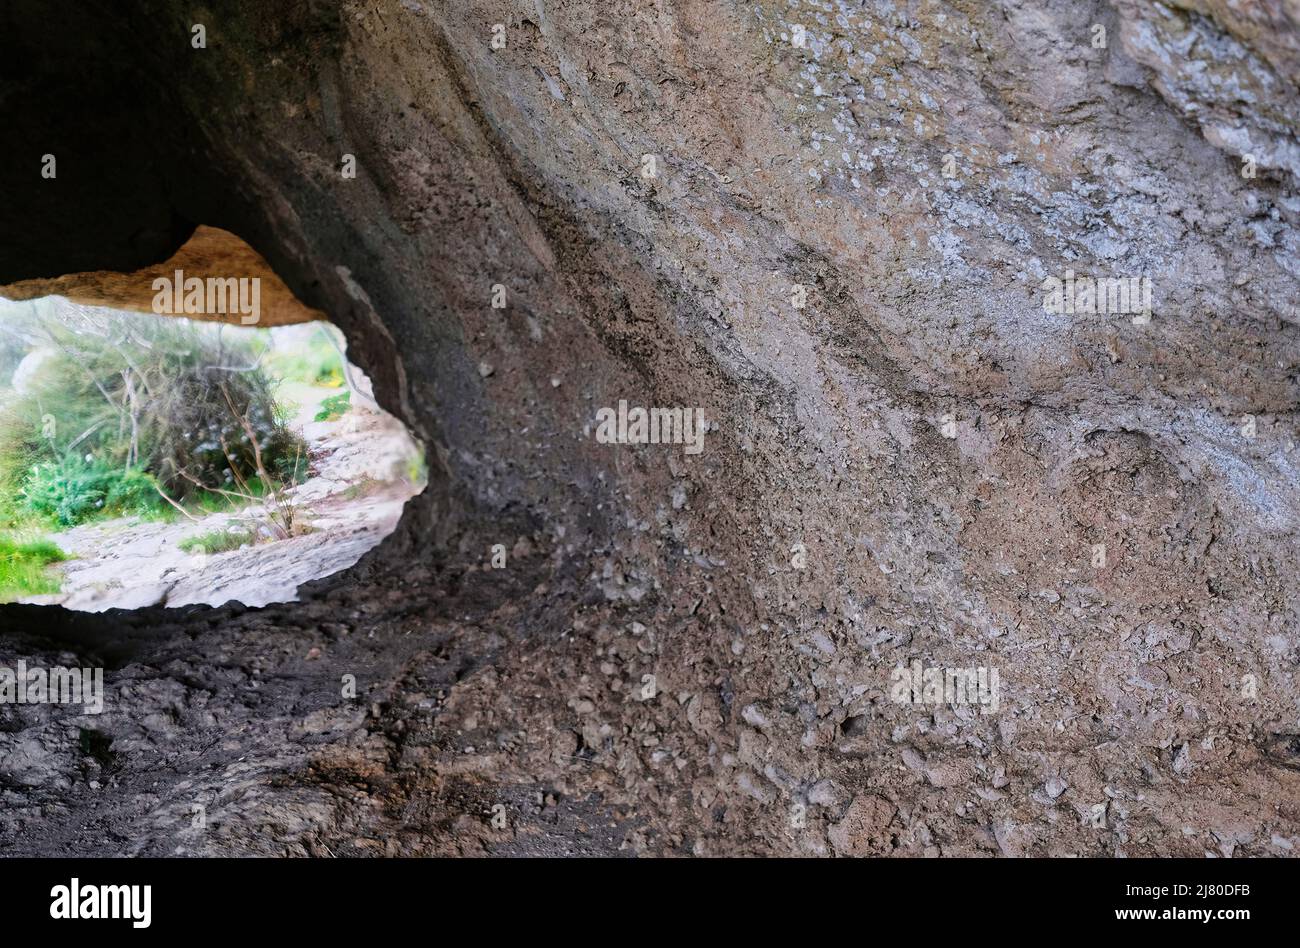 Grottes préhistoriques dans la réserve de Murgia Materana (Matera Italie) datant des périodes paléolithique et néolithique Banque D'Images